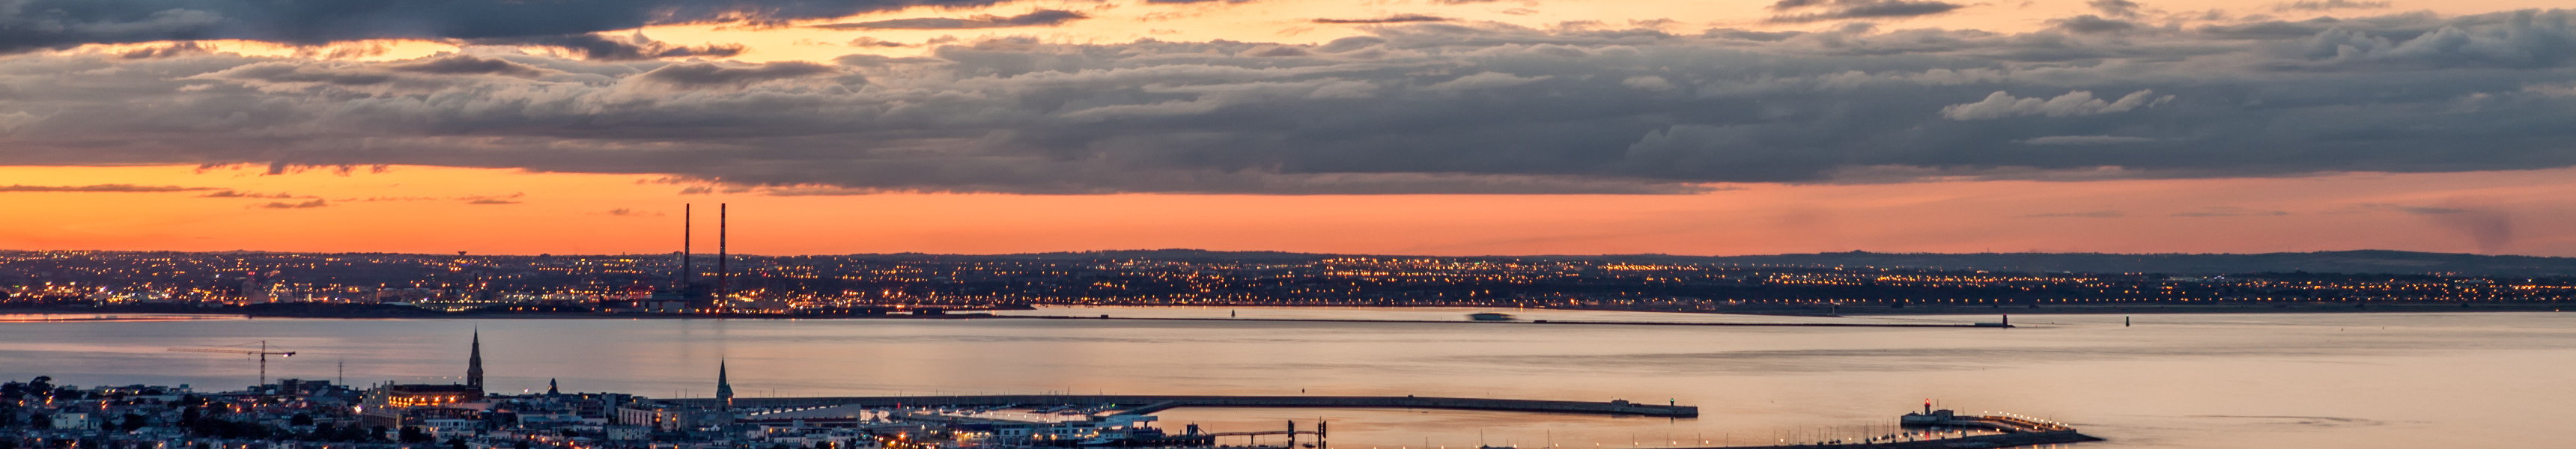 Der Hafen von Dun Laoghiare und die Stadt Dublin bei Sonnenuntergang